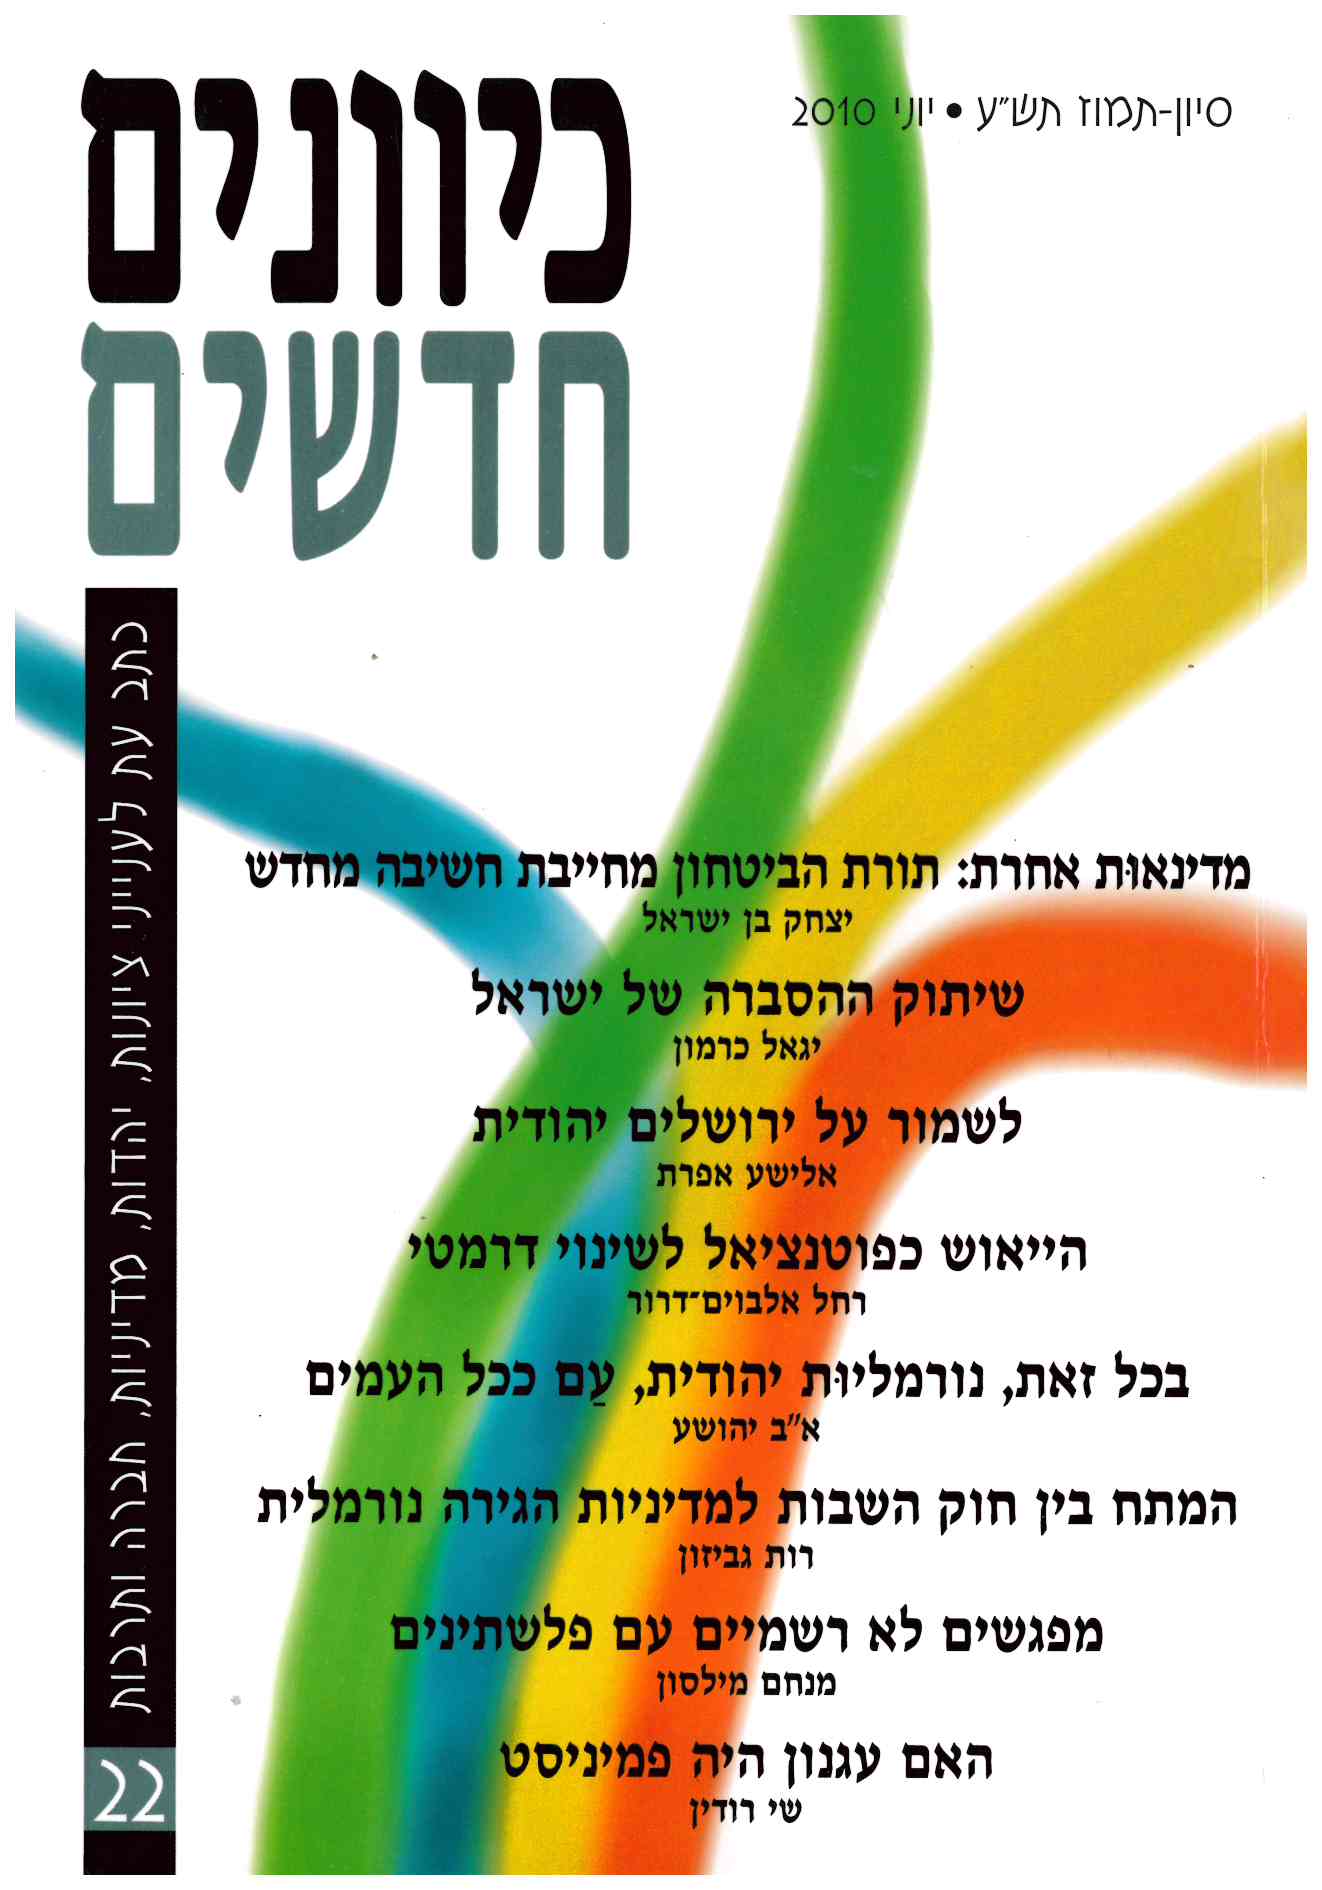 כיוונים חדשים - כתב עת לציונות ויהדות, כרך 22